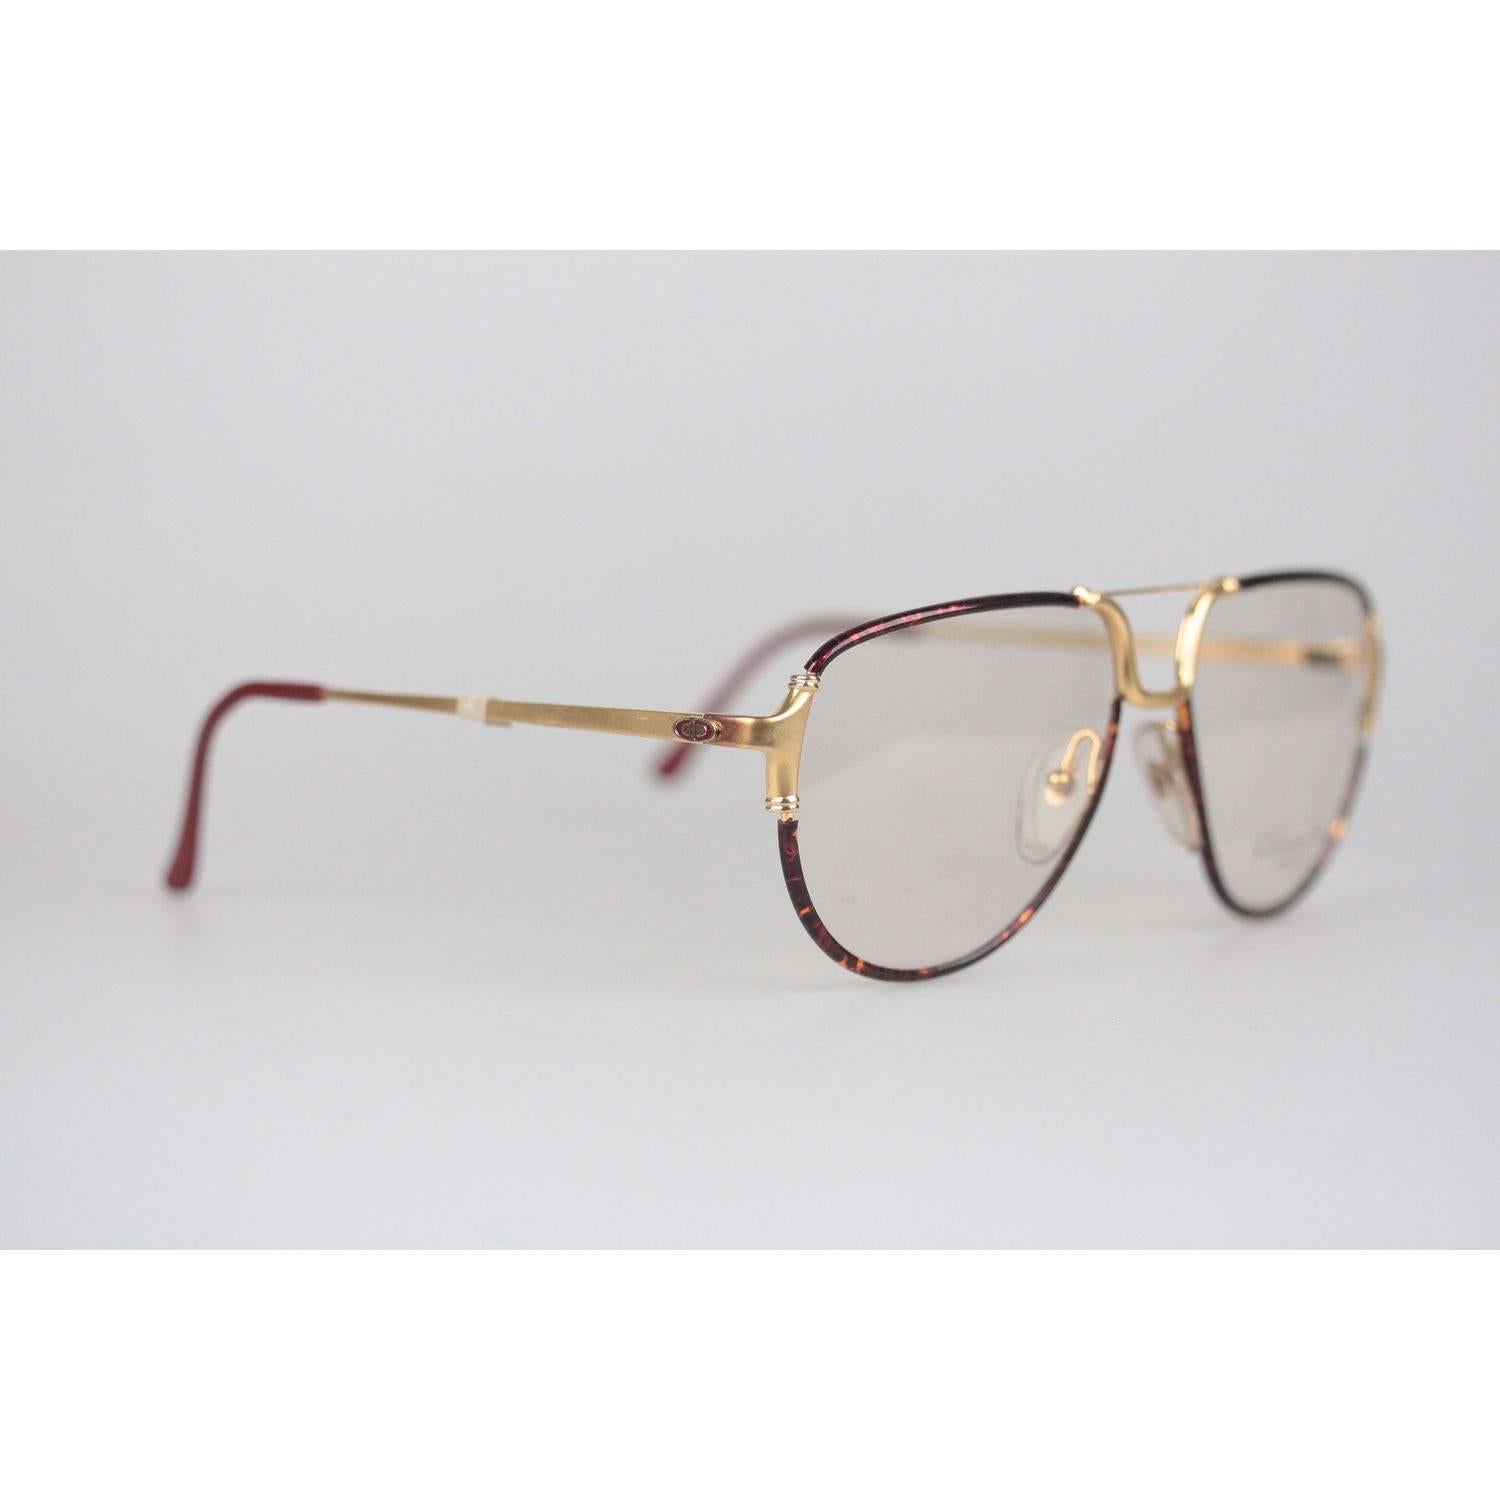 Christian Dior Monsieur Vintage Gold Brown Frame Eyeglasses 2327 59mm 140 NOS 1